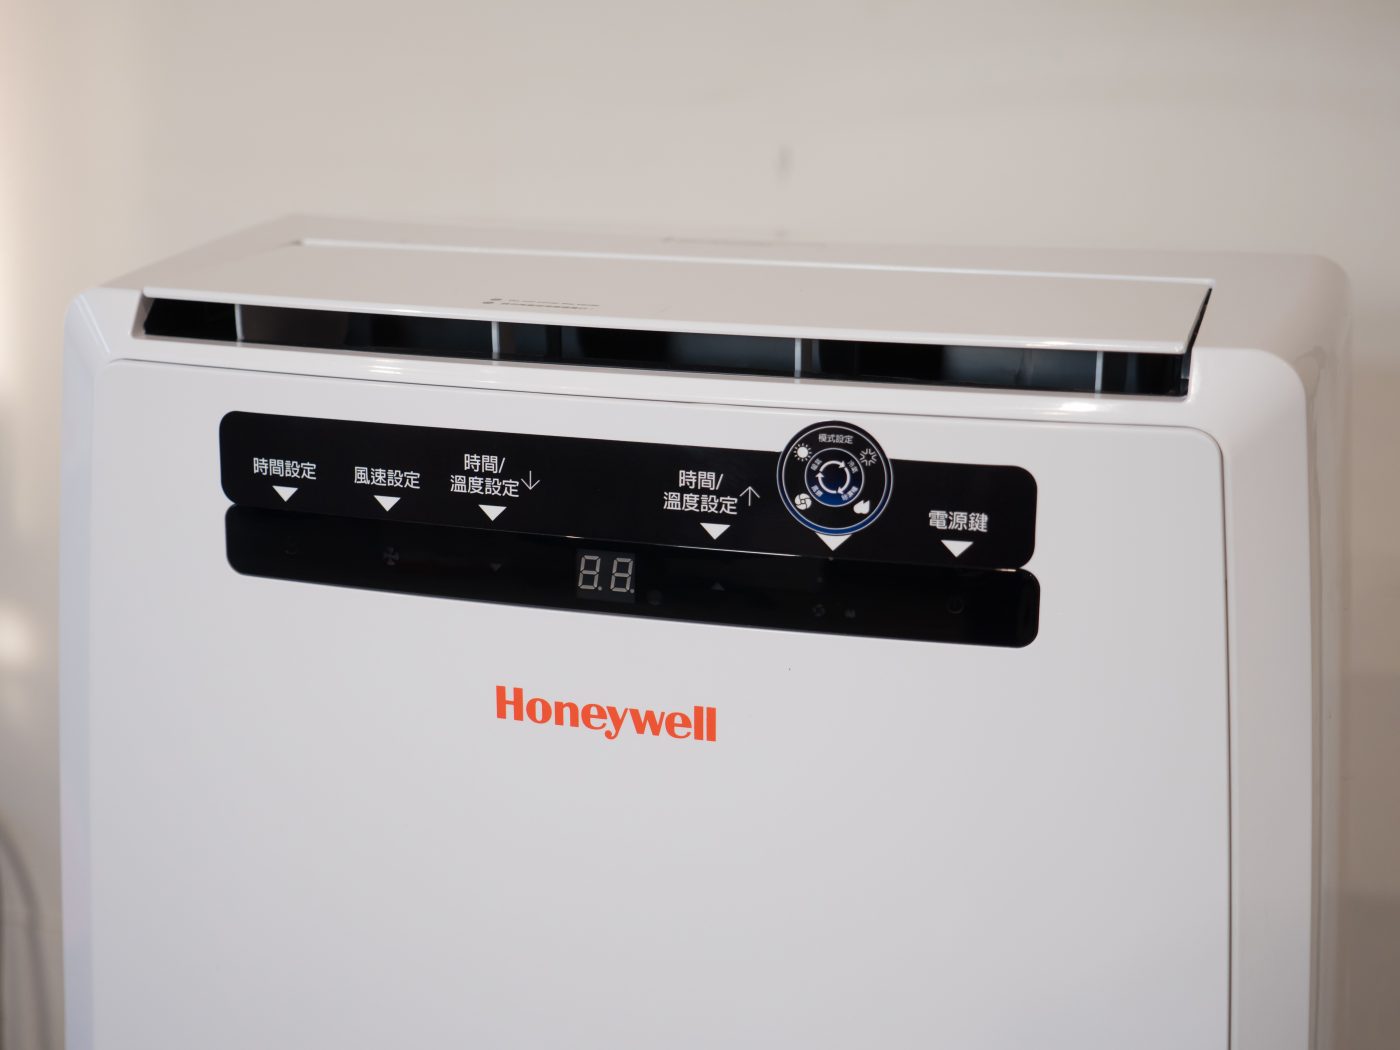 功能完整附帶超強機動性！Honeywell 移動式冷暖空調兼具冷氣、暖氣、風扇、除濕功能四合一 @3C 達人廖阿輝